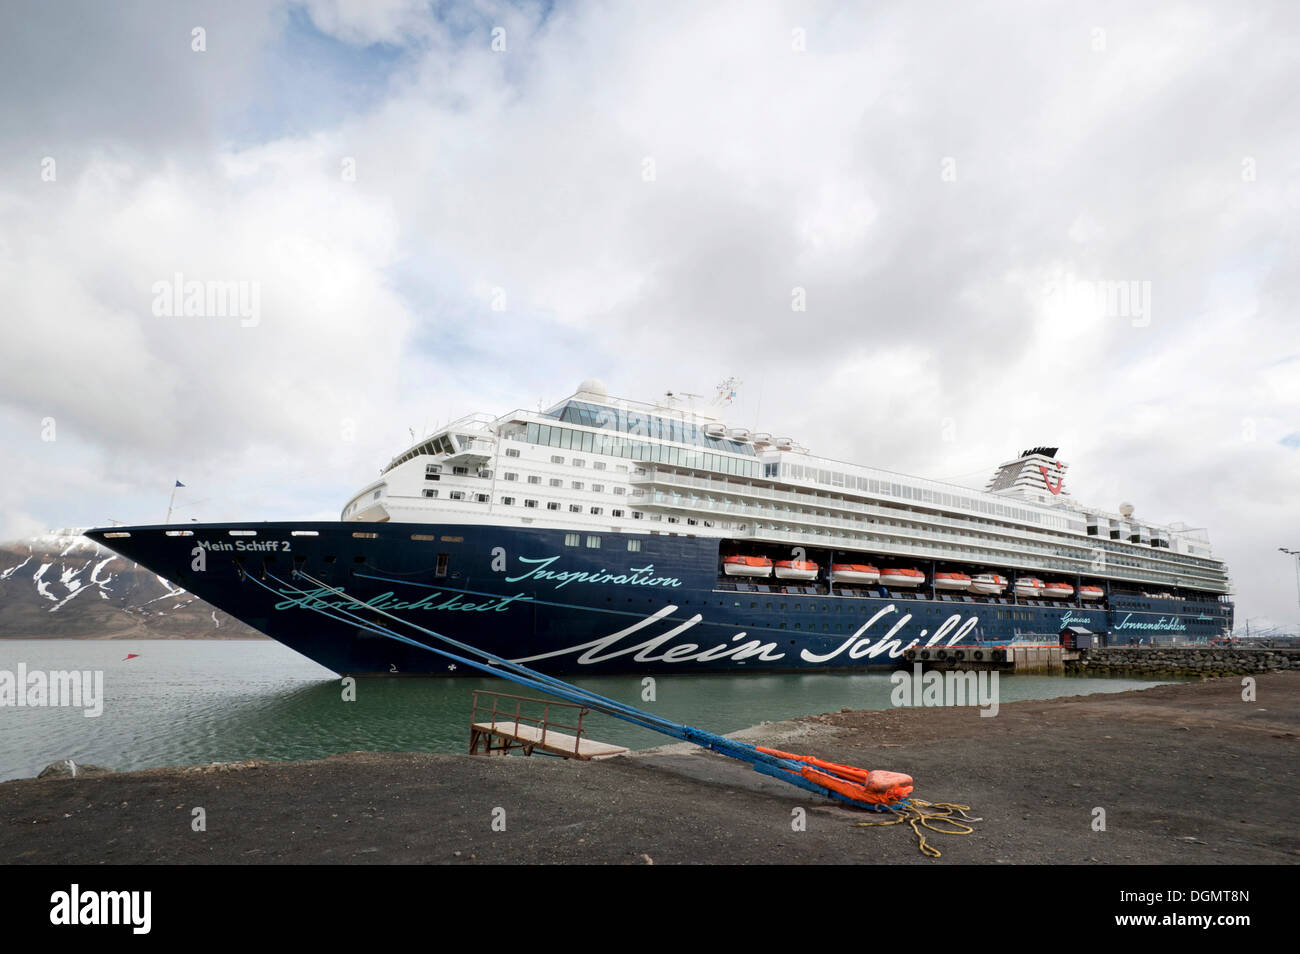 Bateau de croisière Mein Schiff 2, de TUI Travel, amarré dans le port de Longyearbyen, Spitsbergen, Svalbard, Norvège, Europe Banque D'Images